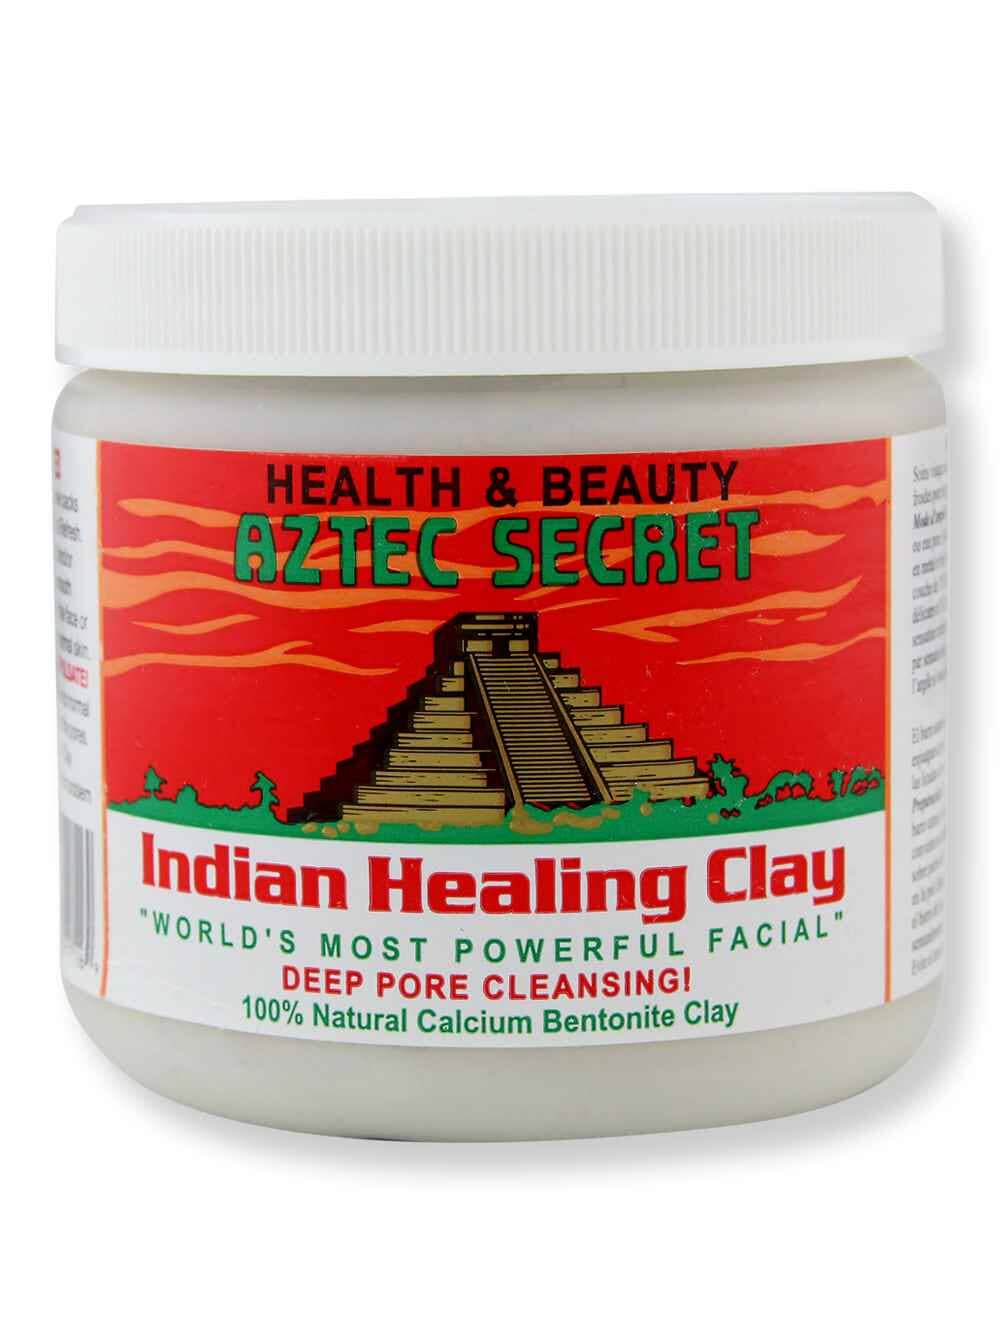 Aztec Secret Aztec Secret Indian Healing Clay Calcium Bentonite Clay 1 lb Face Masks 